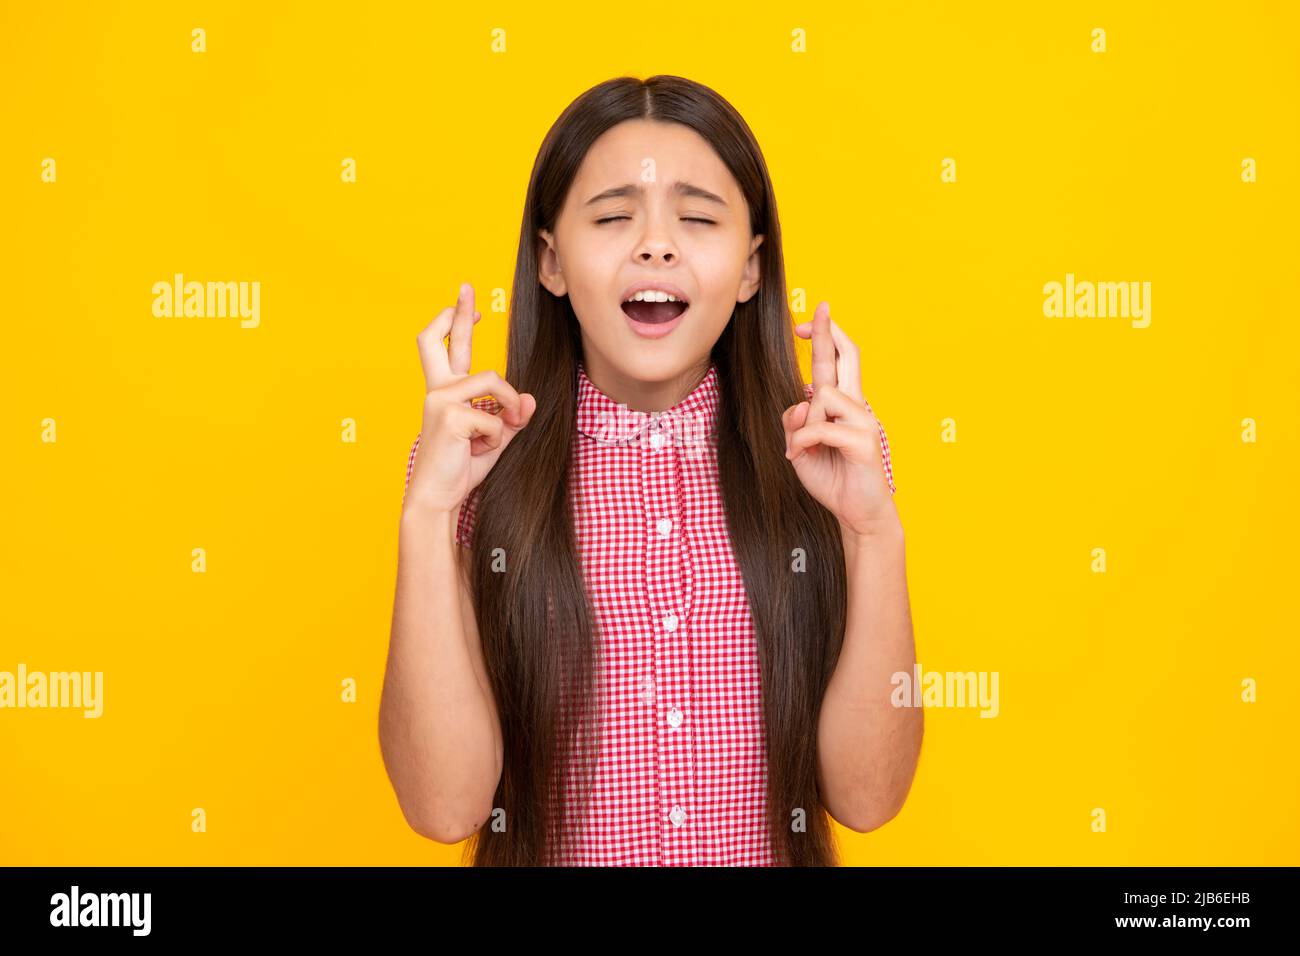 Froh Teenager-Mädchen kreuzt die Finger, schließt die Augen mit Vergnügen, erwarten hören gute Nachrichten, isolierten gelben Hintergrund. Glückliches Kind freut sich, dass seine Stockfoto